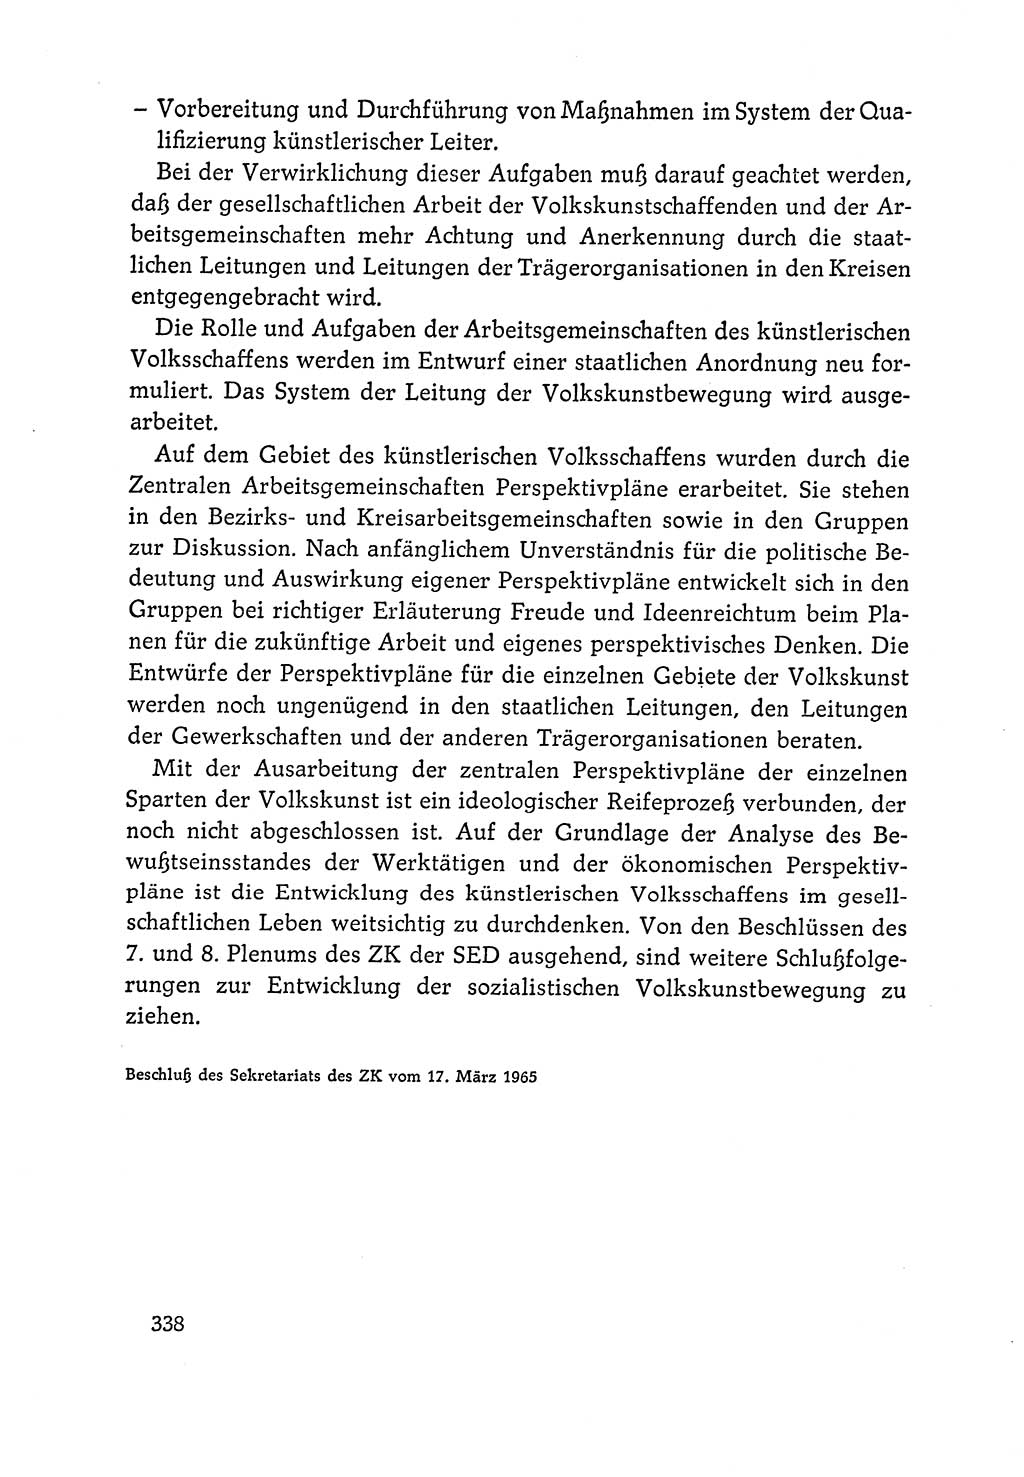 Dokumente der Sozialistischen Einheitspartei Deutschlands (SED) [Deutsche Demokratische Republik (DDR)] 1964-1965, Seite 338 (Dok. SED DDR 1964-1965, S. 338)